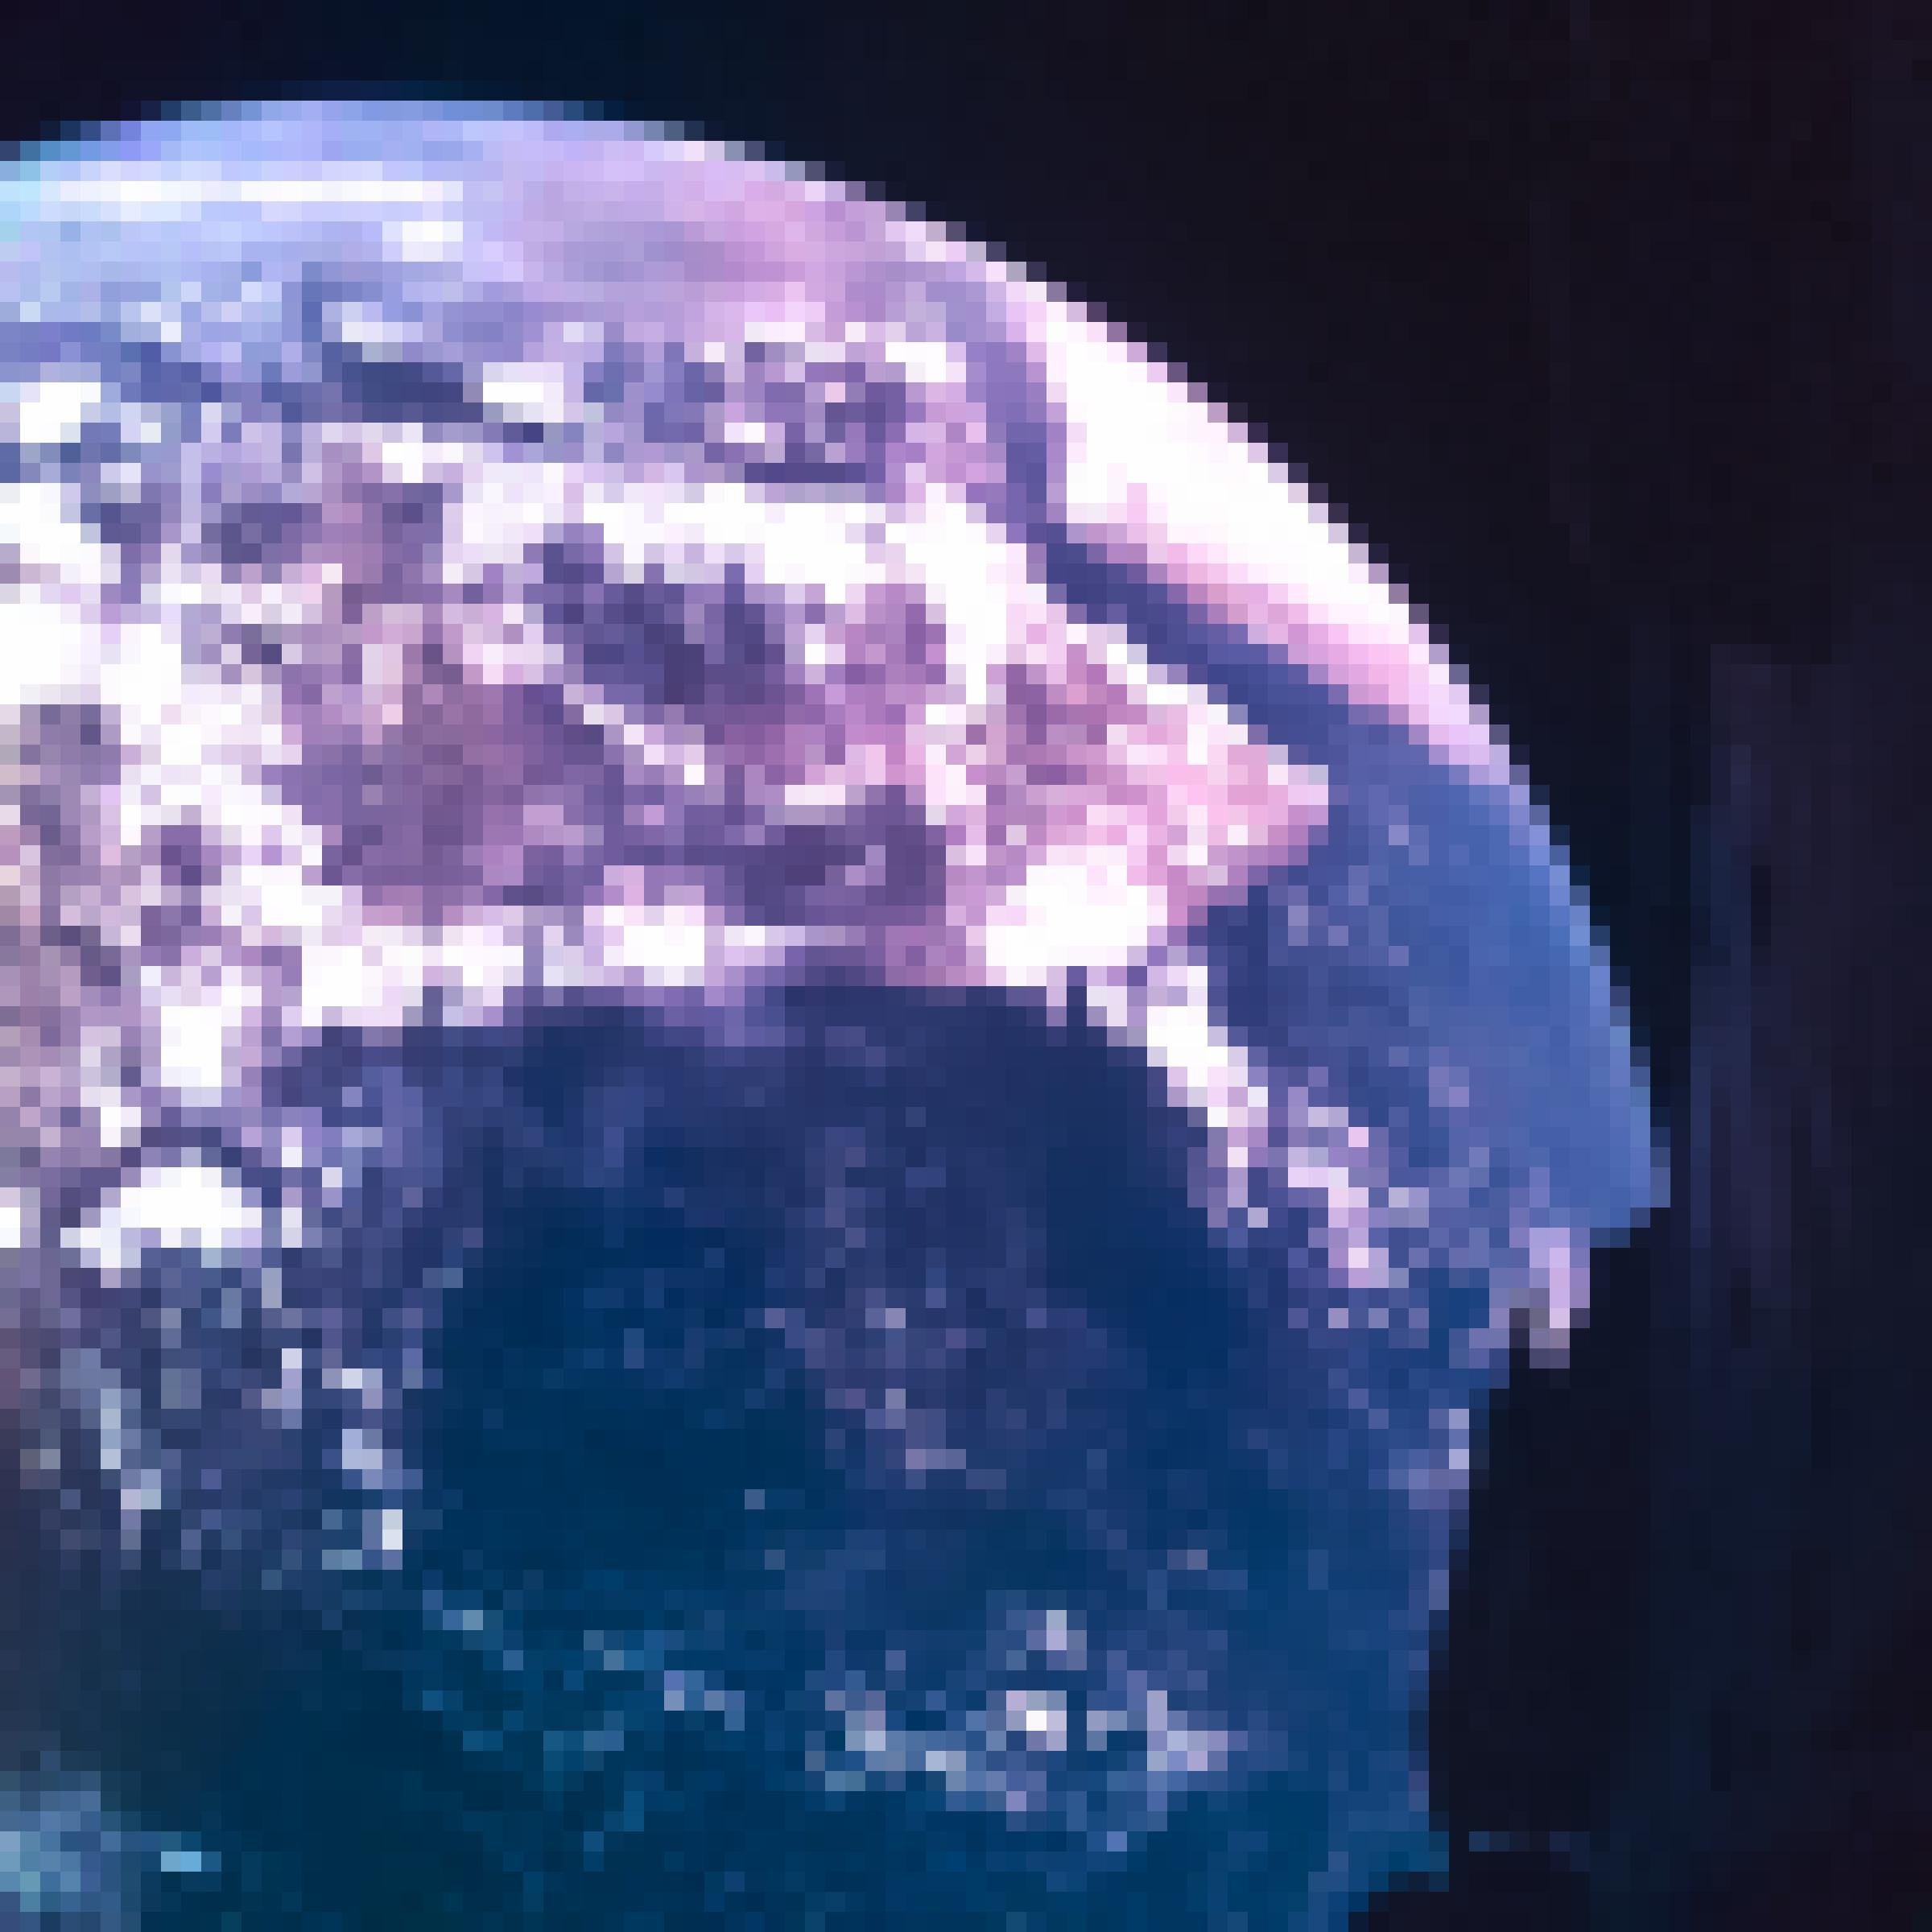 Ein Selfie von der Raumsonde Juice mit dem Blick auf die Erde. Im Hintergrund befindet sich ein großer Ausschnitt der Erde, rechts zeigt sich ein Teil der Raumsonde, 